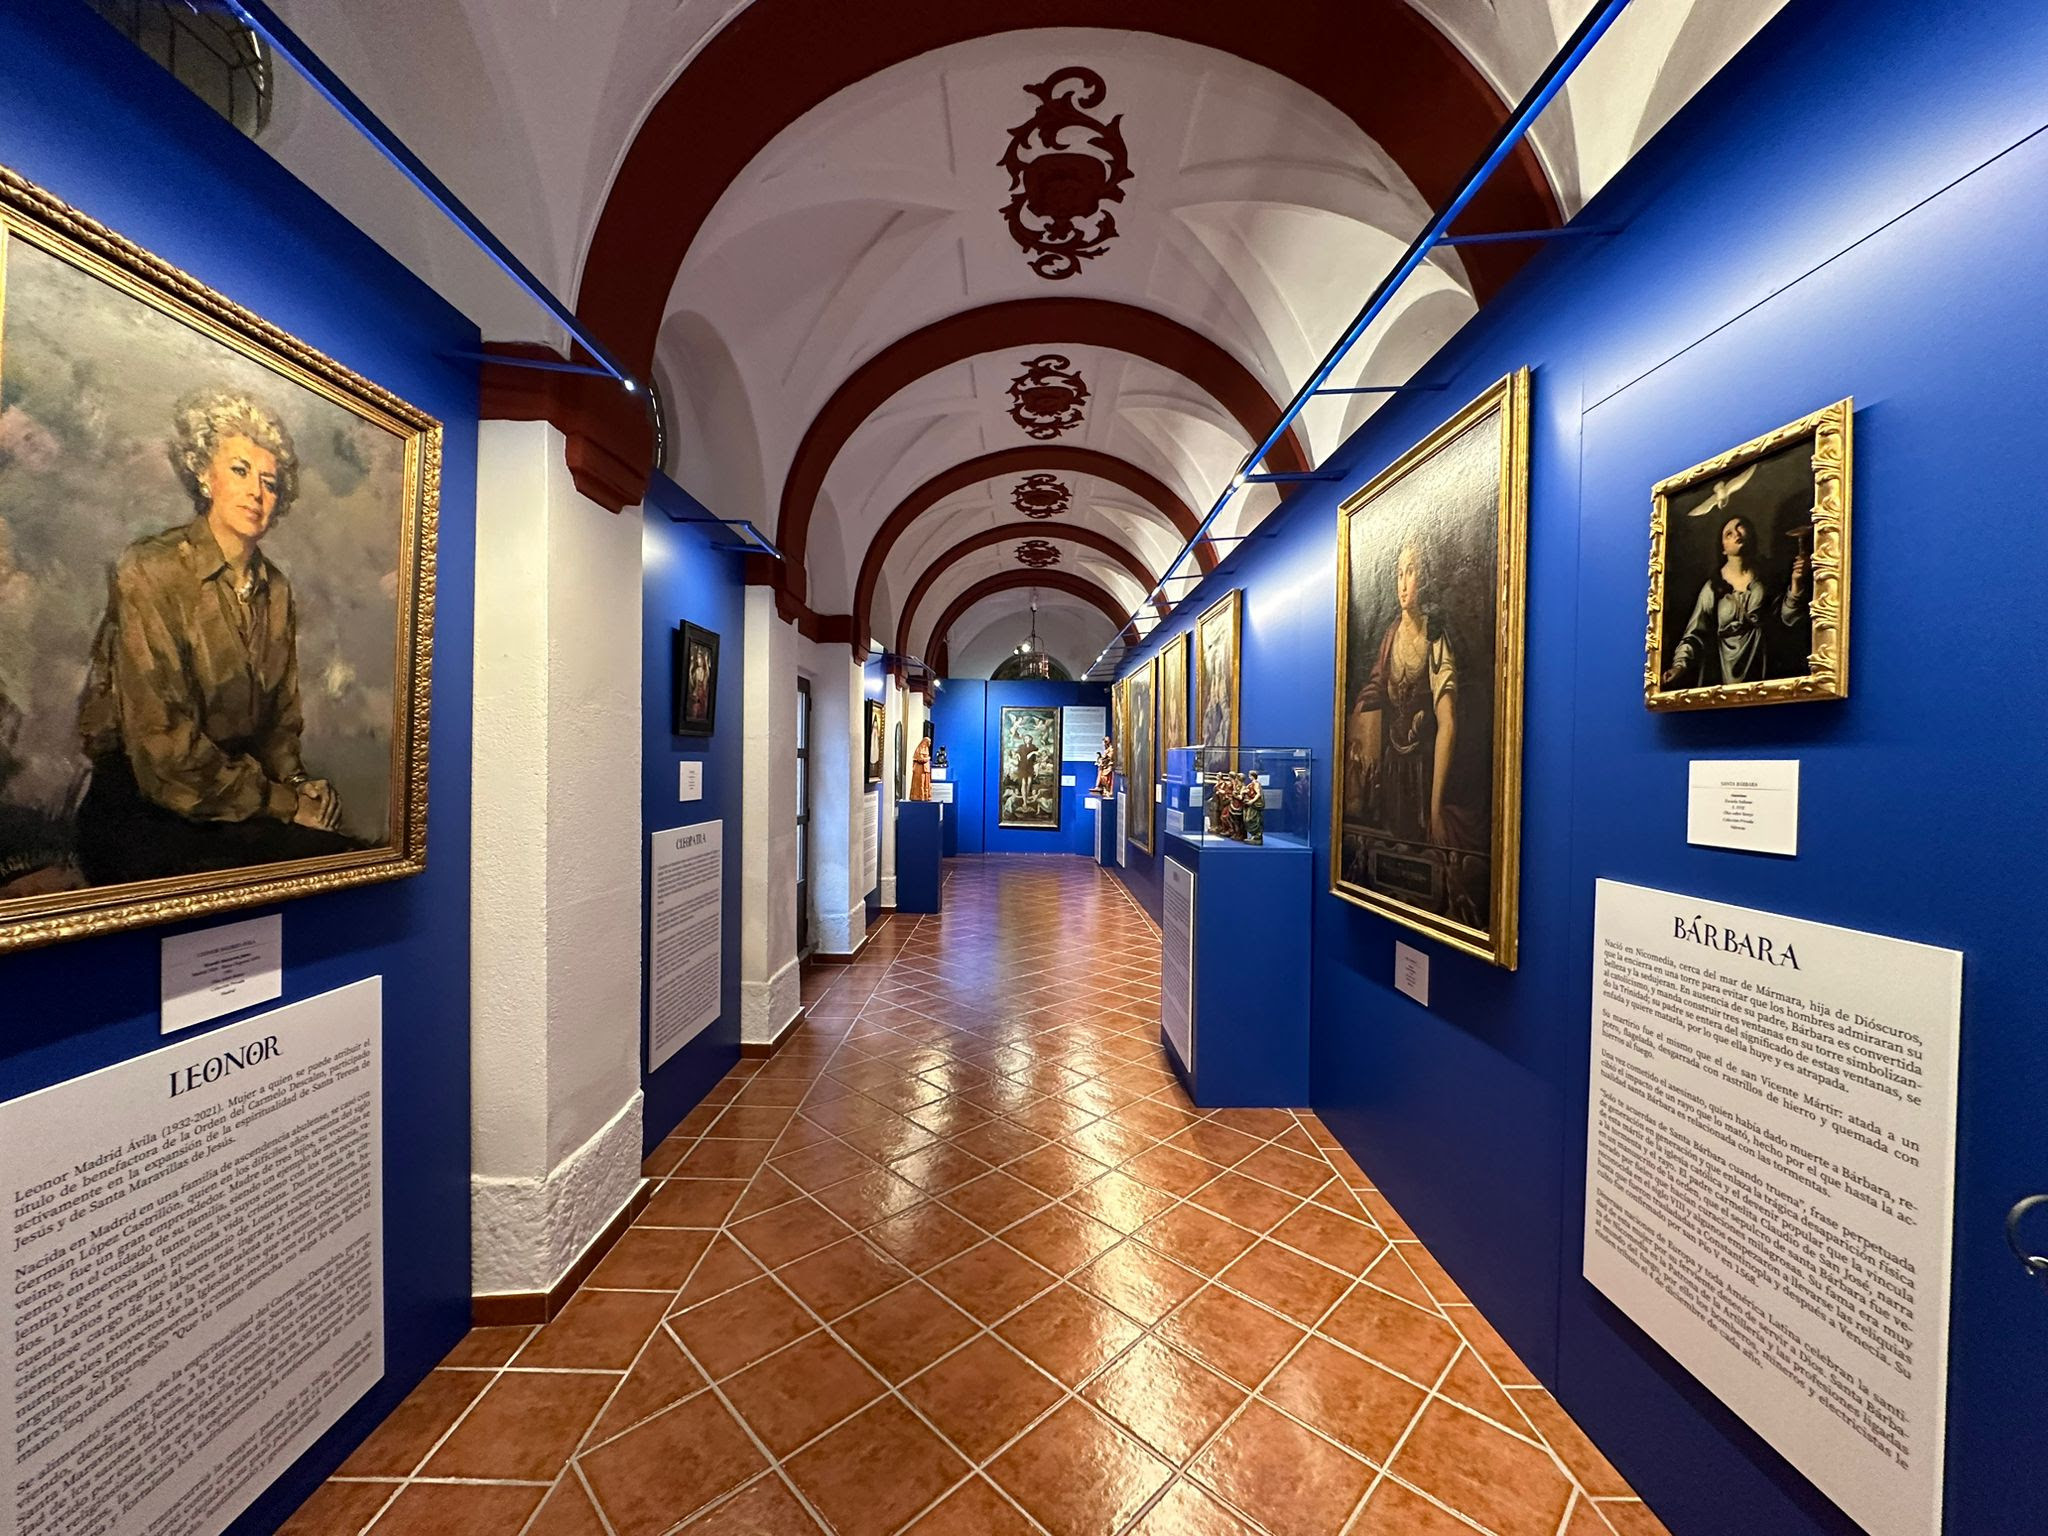  La provincia de Salamanca alberga una exposición de 180 obras de arte en honor a mujeres ilustres de la historia 